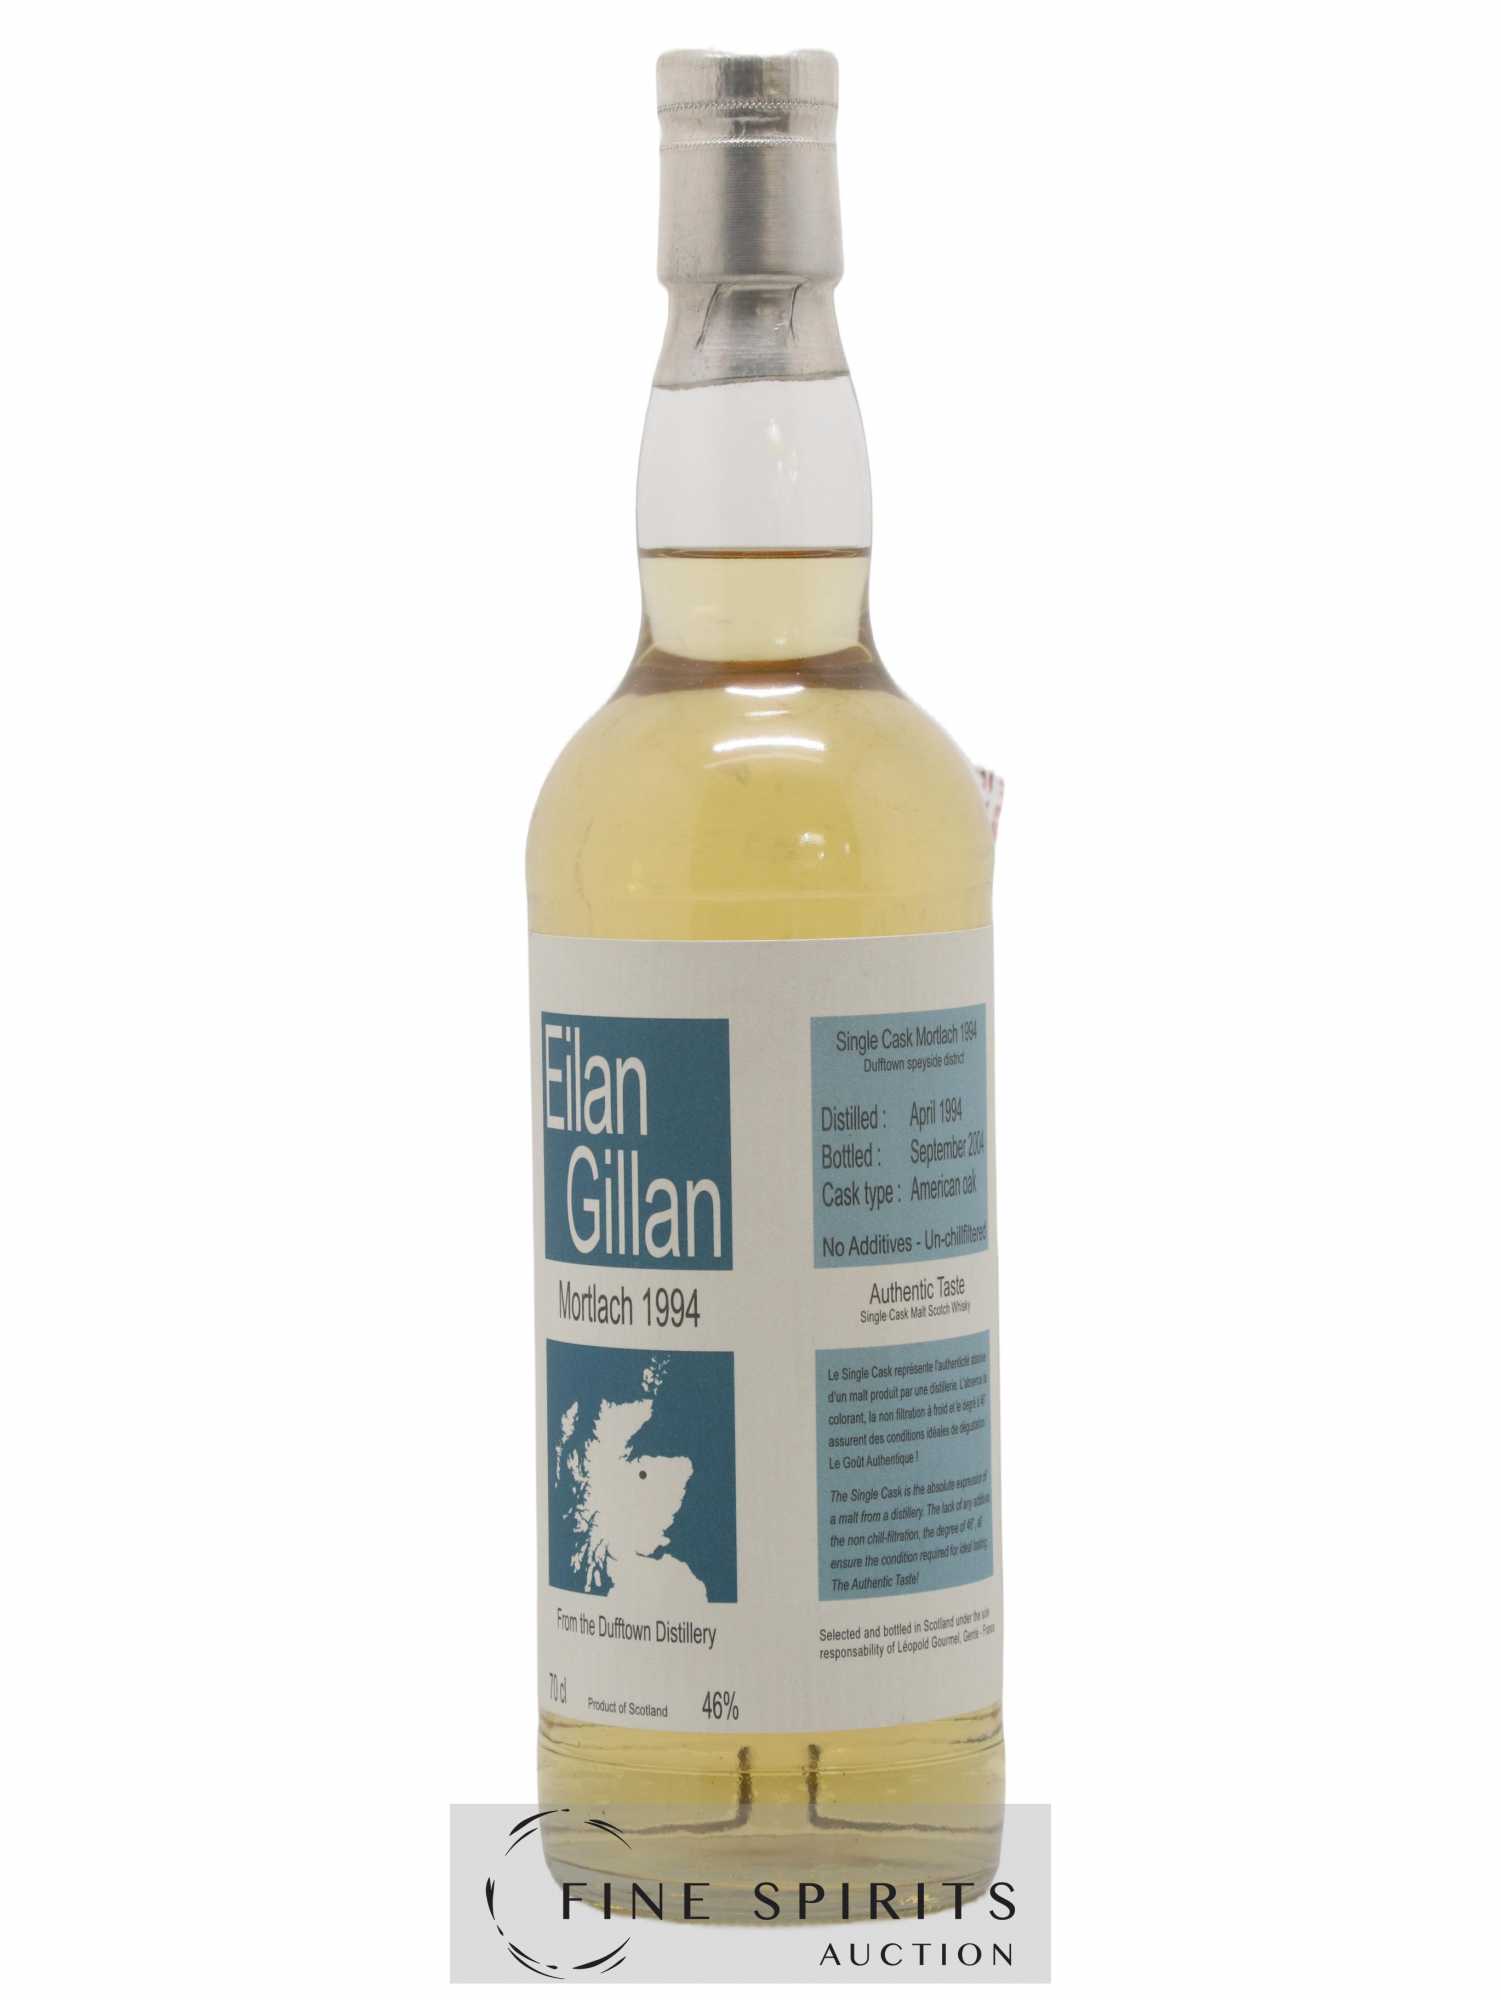 Mortlach 1994 Eilan Gillan Authentic Taste Single American Oak Cask - bottled 2004